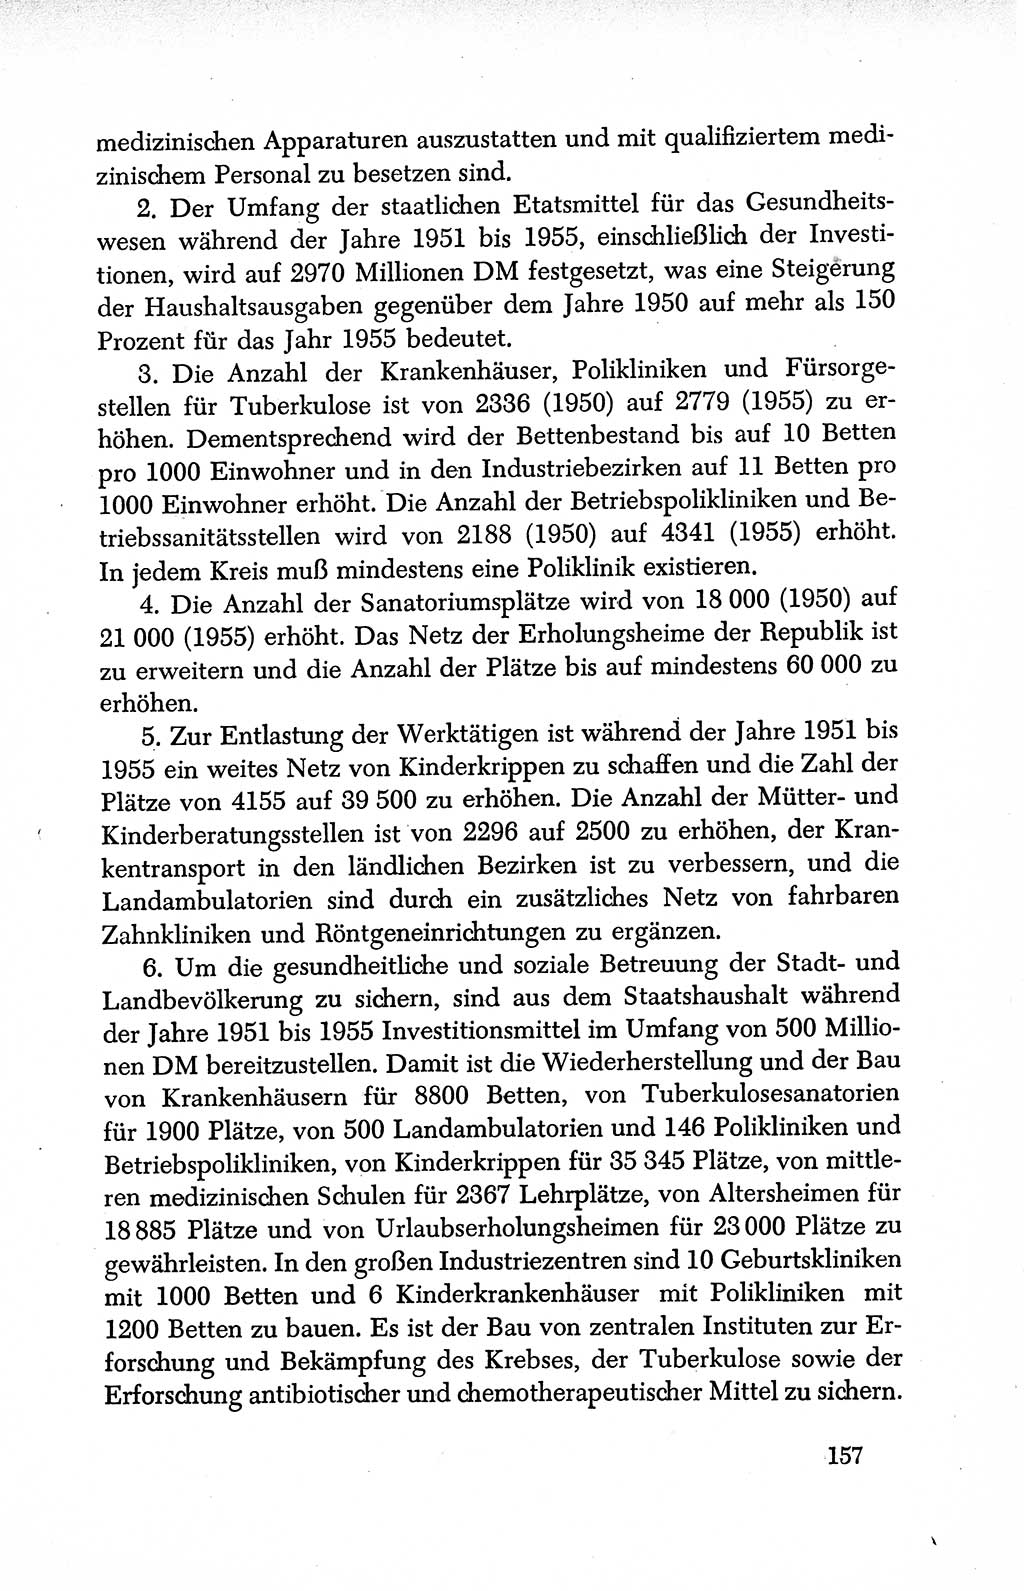 Dokumente der Sozialistischen Einheitspartei Deutschlands (SED) [Deutsche Demokratische Republik (DDR)] 1950-1952, Seite 157 (Dok. SED DDR 1950-1952, S. 157)